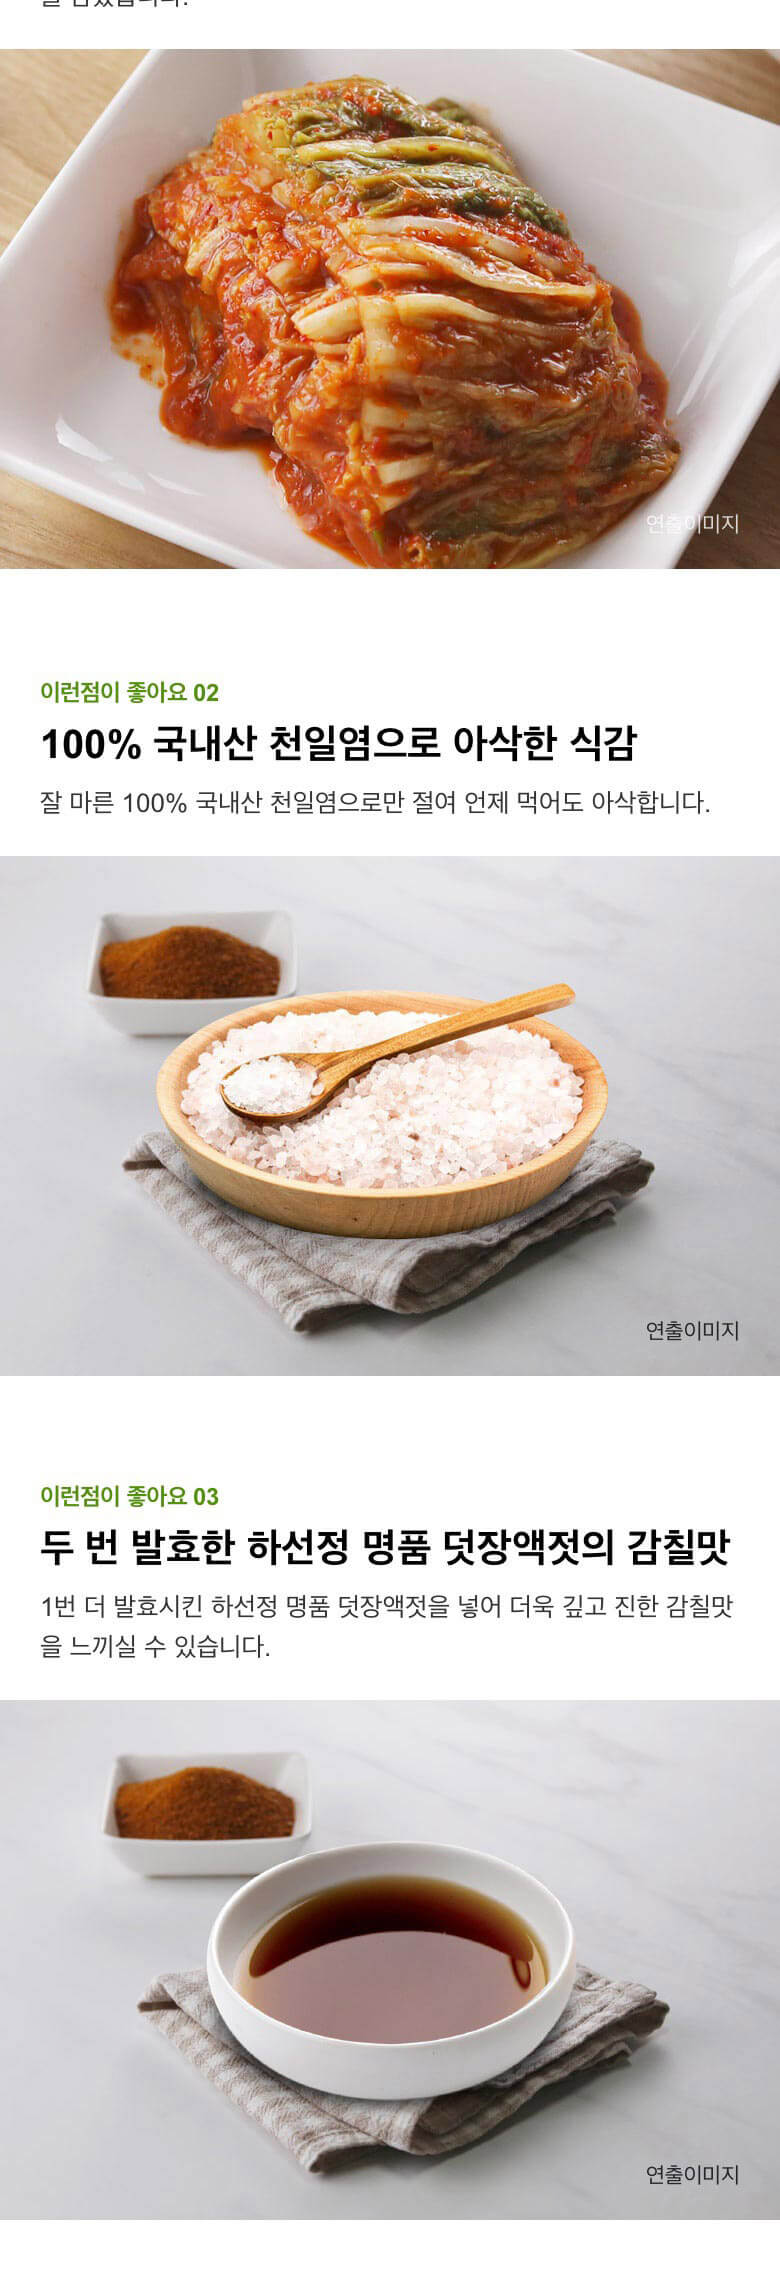 韓國食品-[CJ] Bibigo 切件泡菜 500g